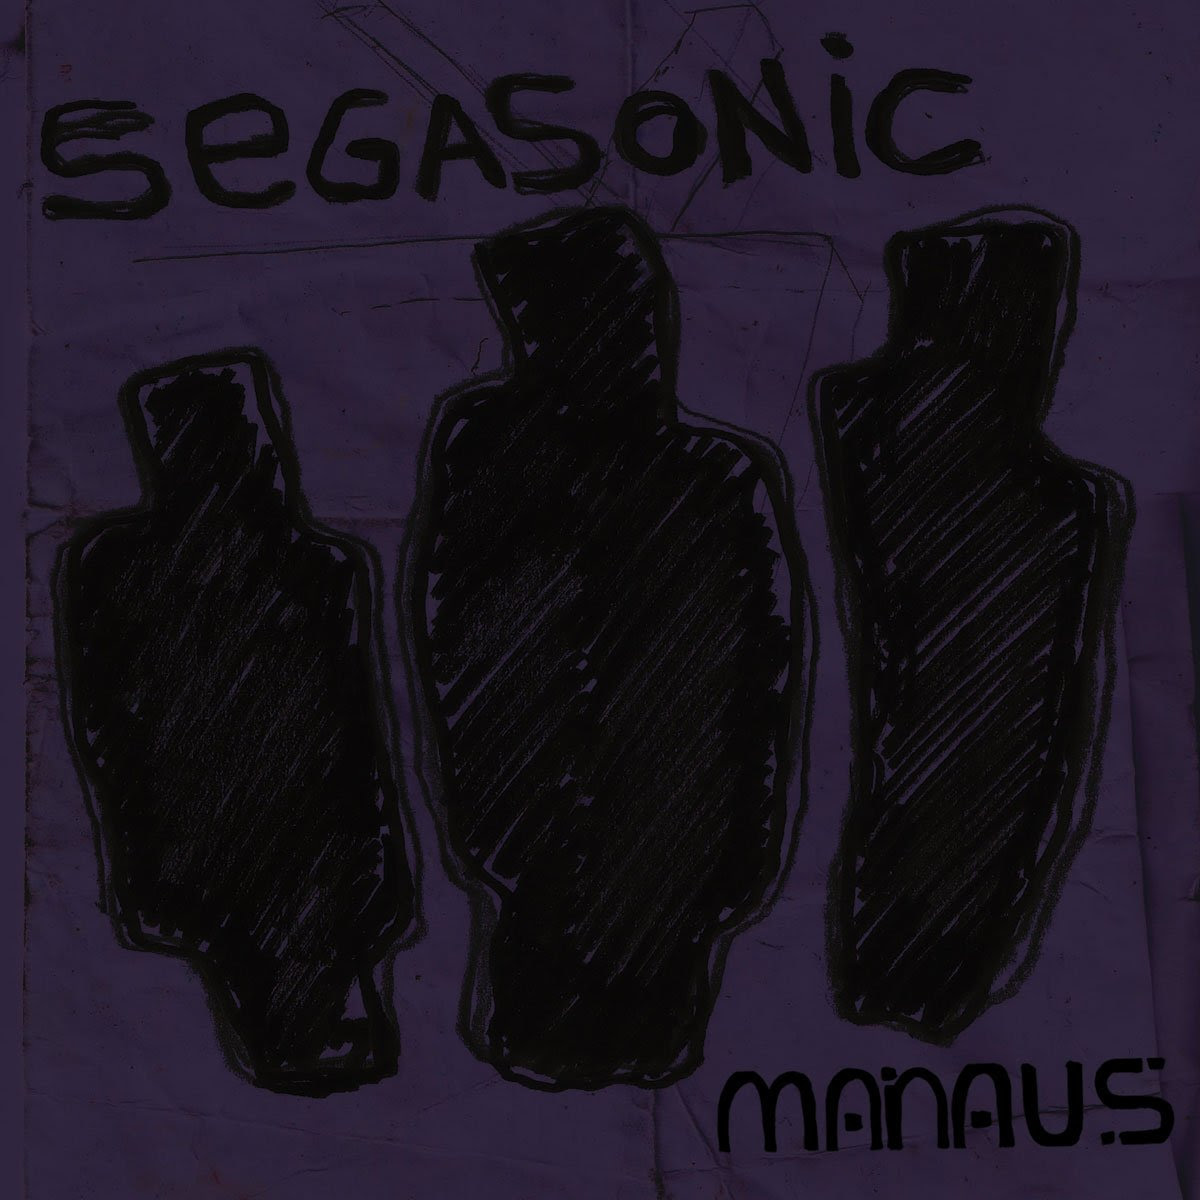 MANAUS: dal 10 maggio disponibile in radio e in digitale “SEGASONIC” il singolo d’esordio